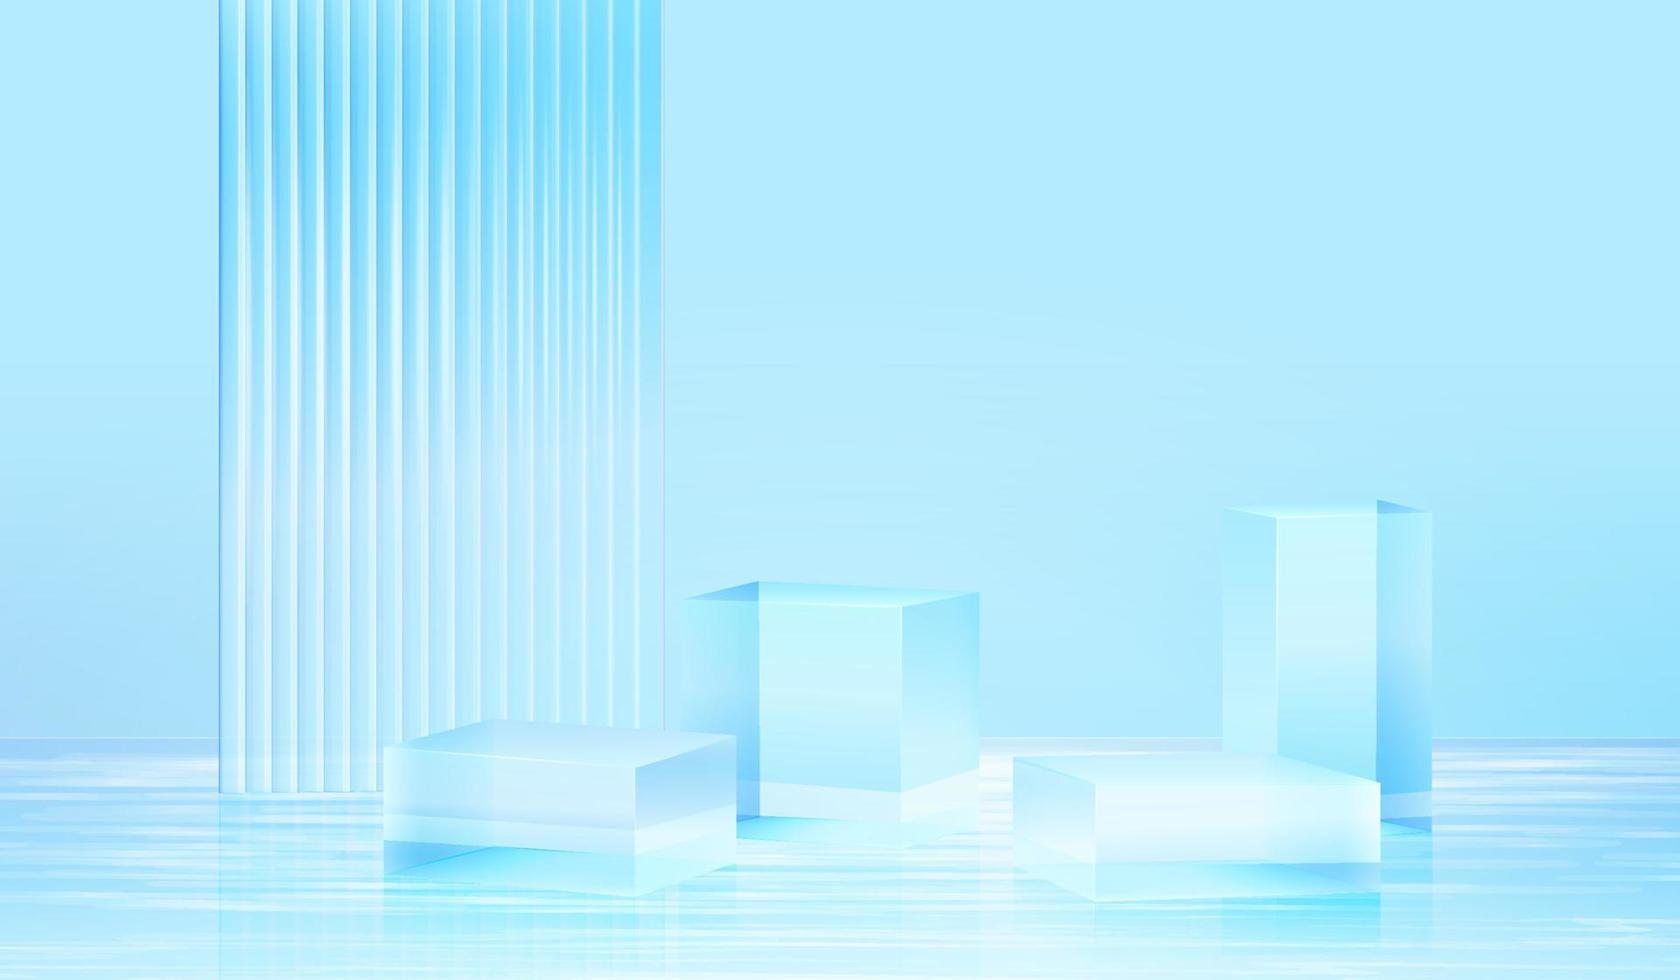 Plattform des Hintergrundes 3d mit blauem Glas im Wasser. Hintergrund Vektor 3D-Rendering Kristallpodest-Plattform. Stand zeigen kosmetisches Produkt. Bühnenvitrine auf Podest modernes Glasstudio in Wasserplattform